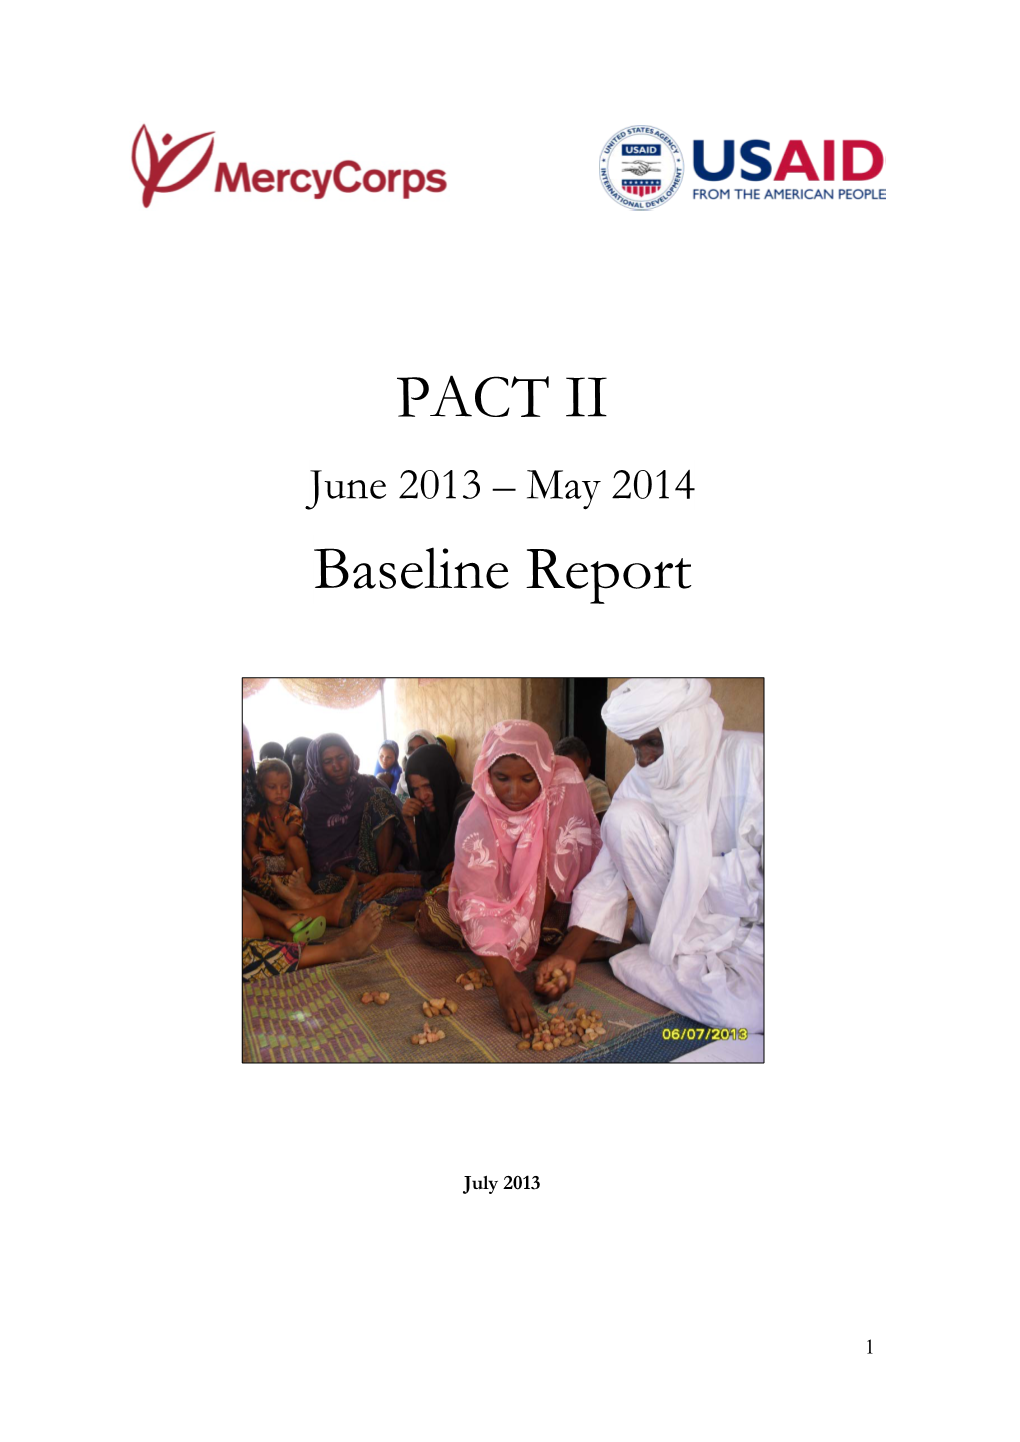 PACT II Baseline Report